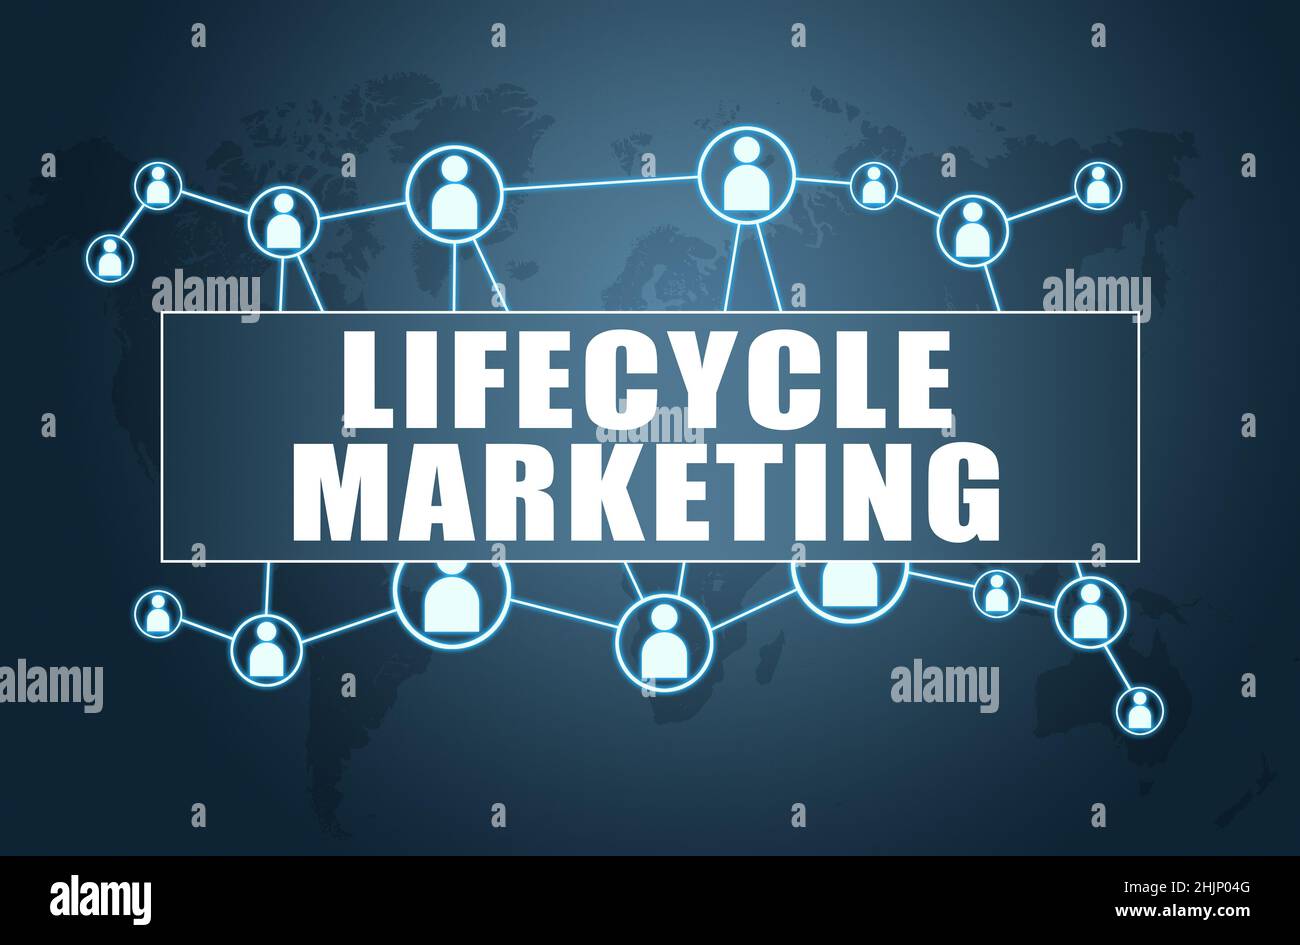 Marketing de cycle de vie - concept de texte sur fond bleu avec carte du monde et icônes sociales. Banque D'Images